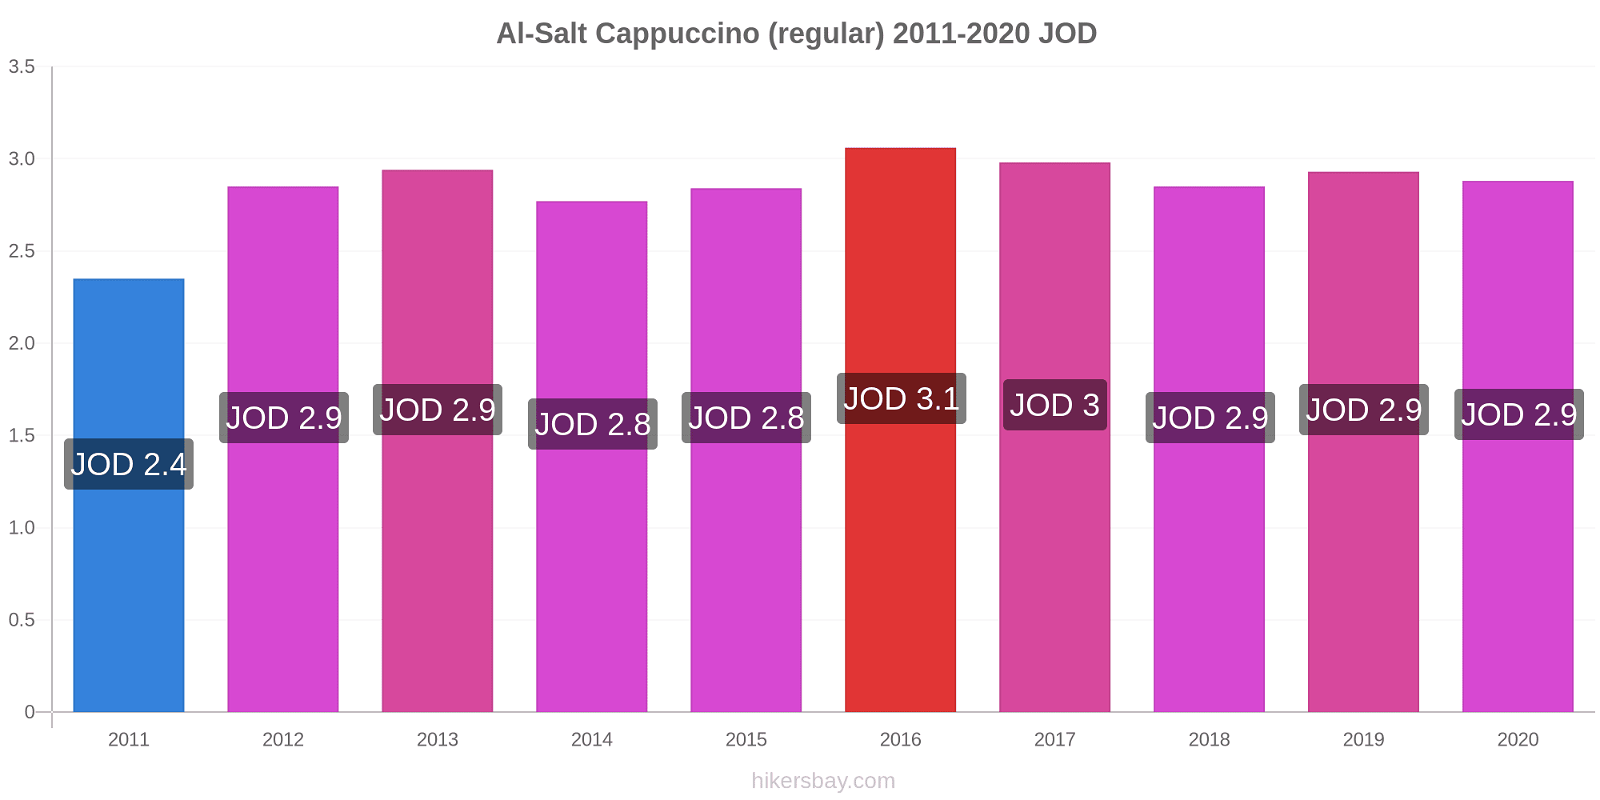 Al-Salt price changes Cappuccino (regular) hikersbay.com